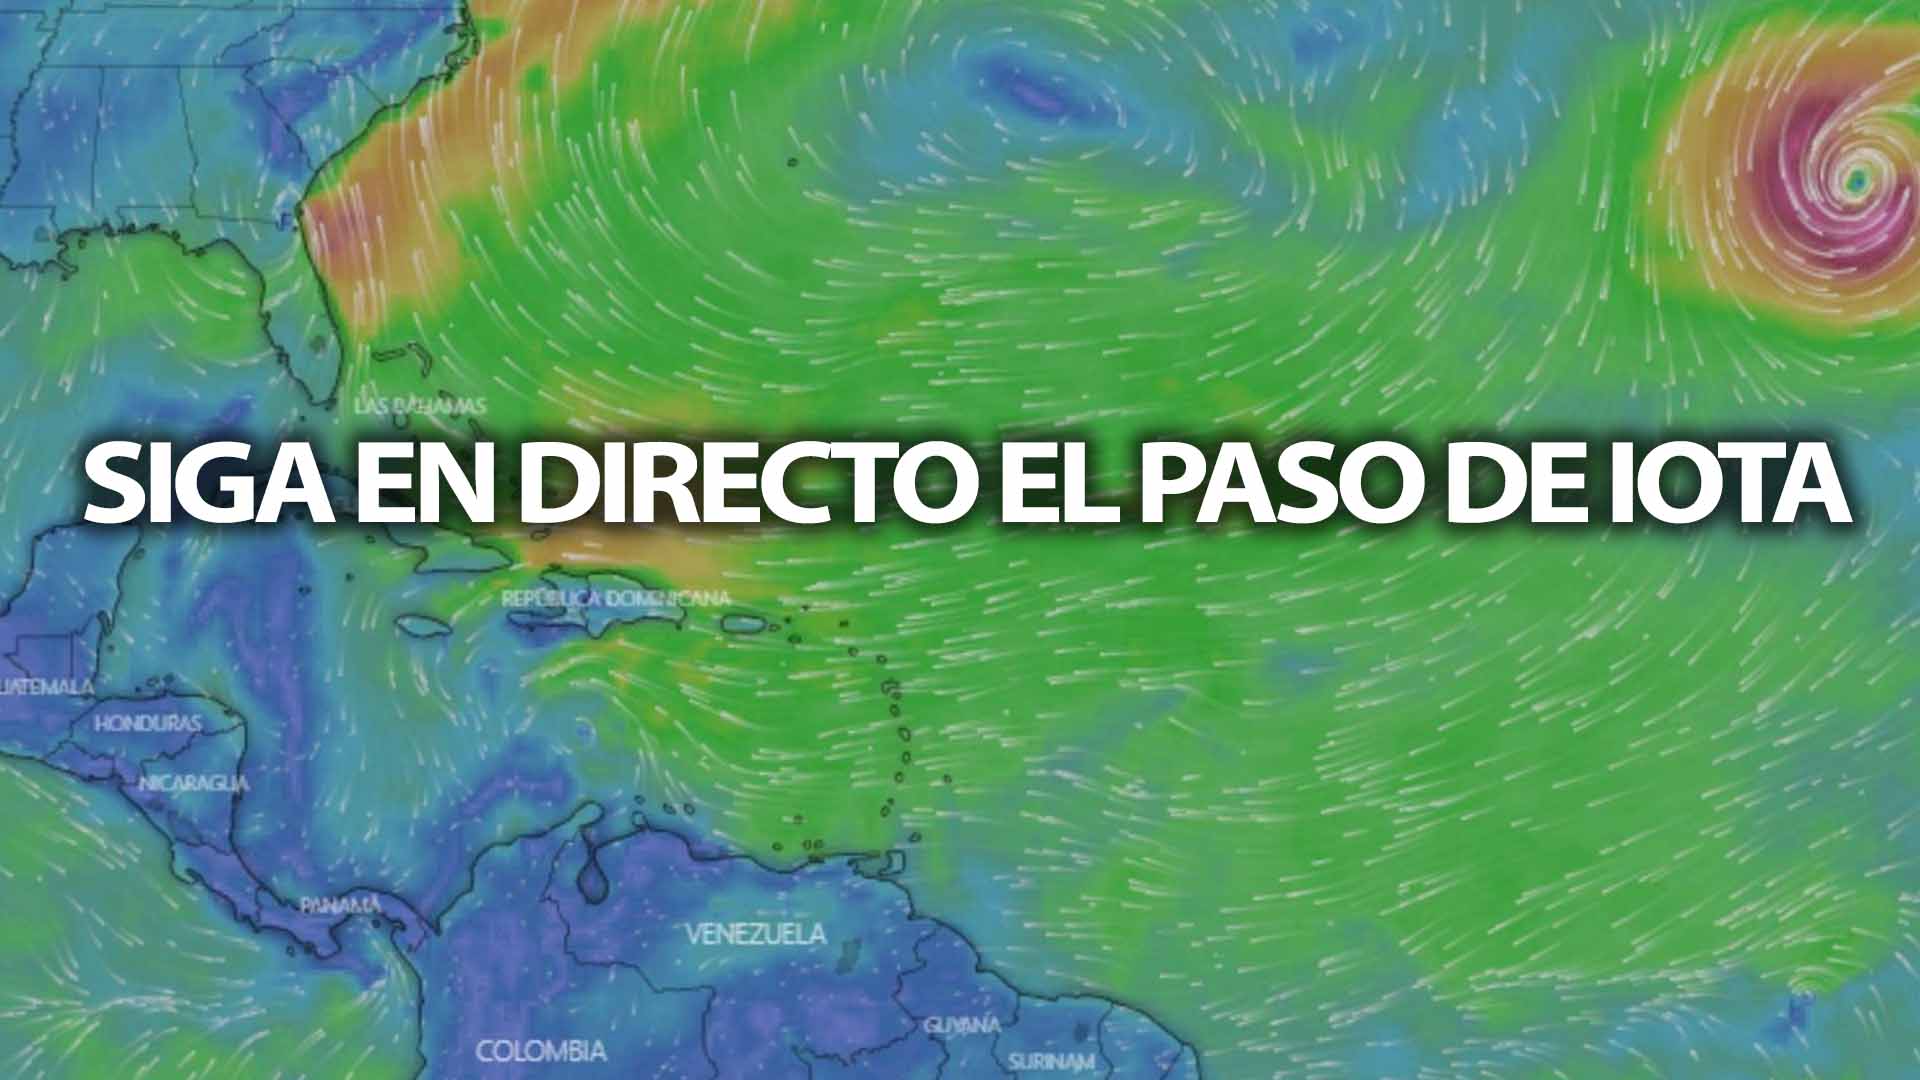 Siga en DIRECTO la trayectoria de “IOTA”, posible tormenta tropical que llegaría este fin de semana al país